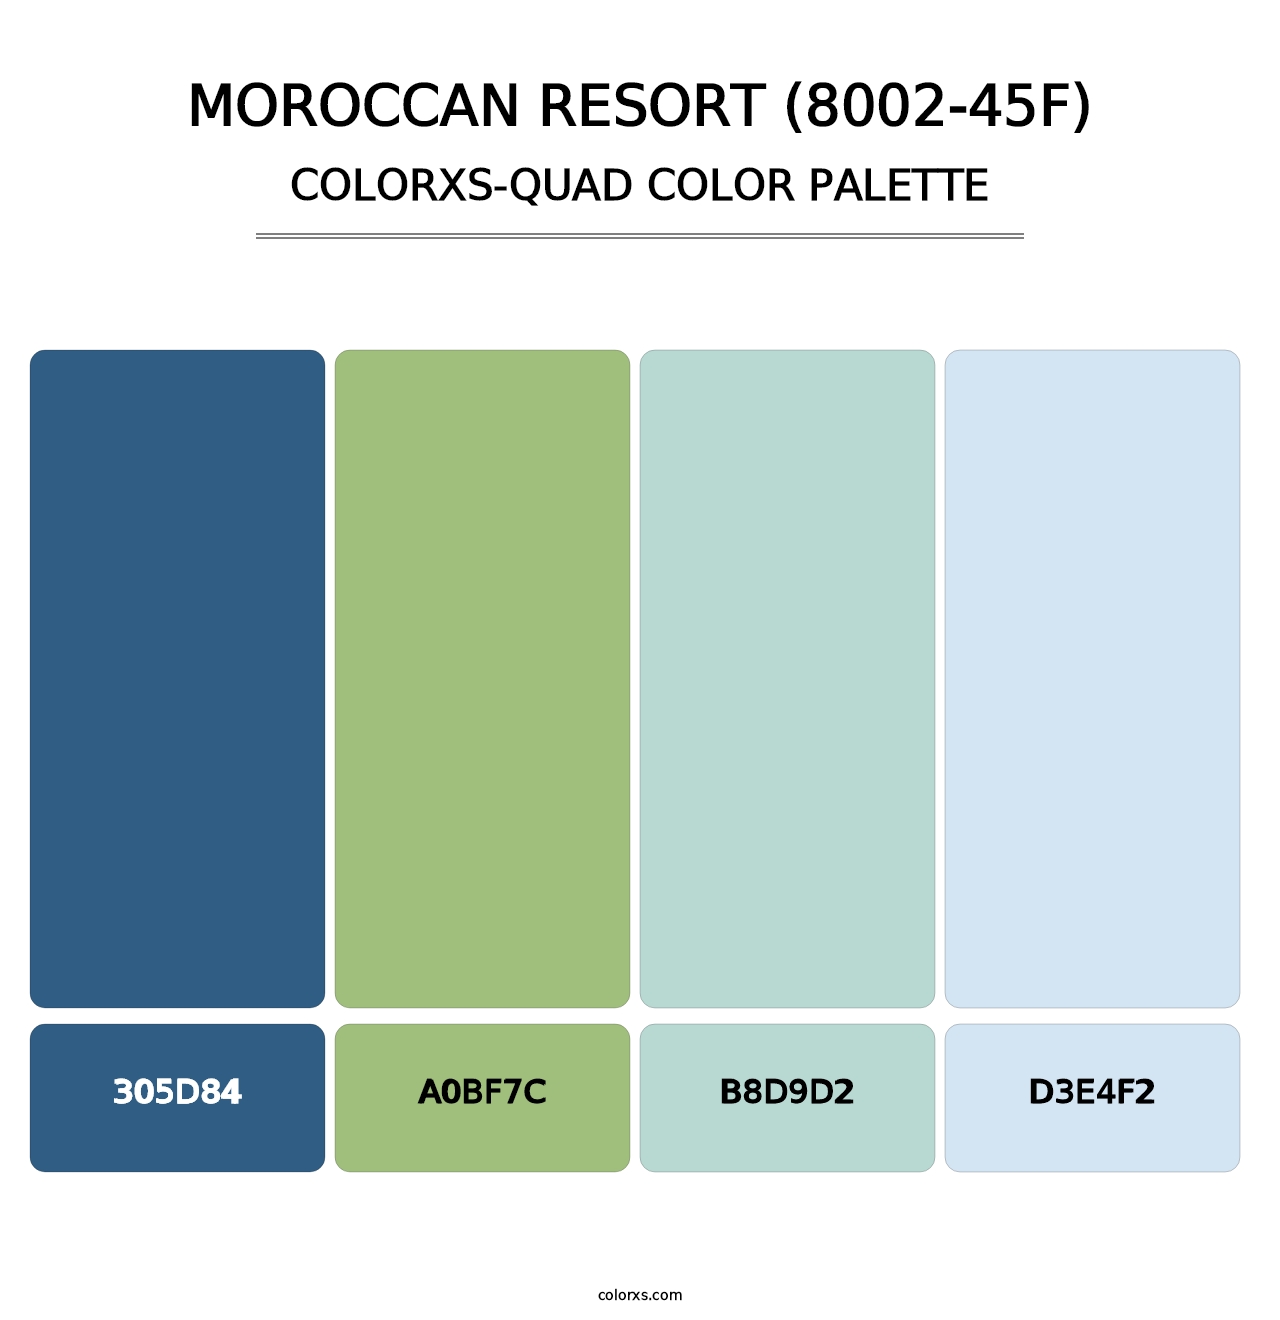 Moroccan Resort (8002-45F) - Colorxs Quad Palette